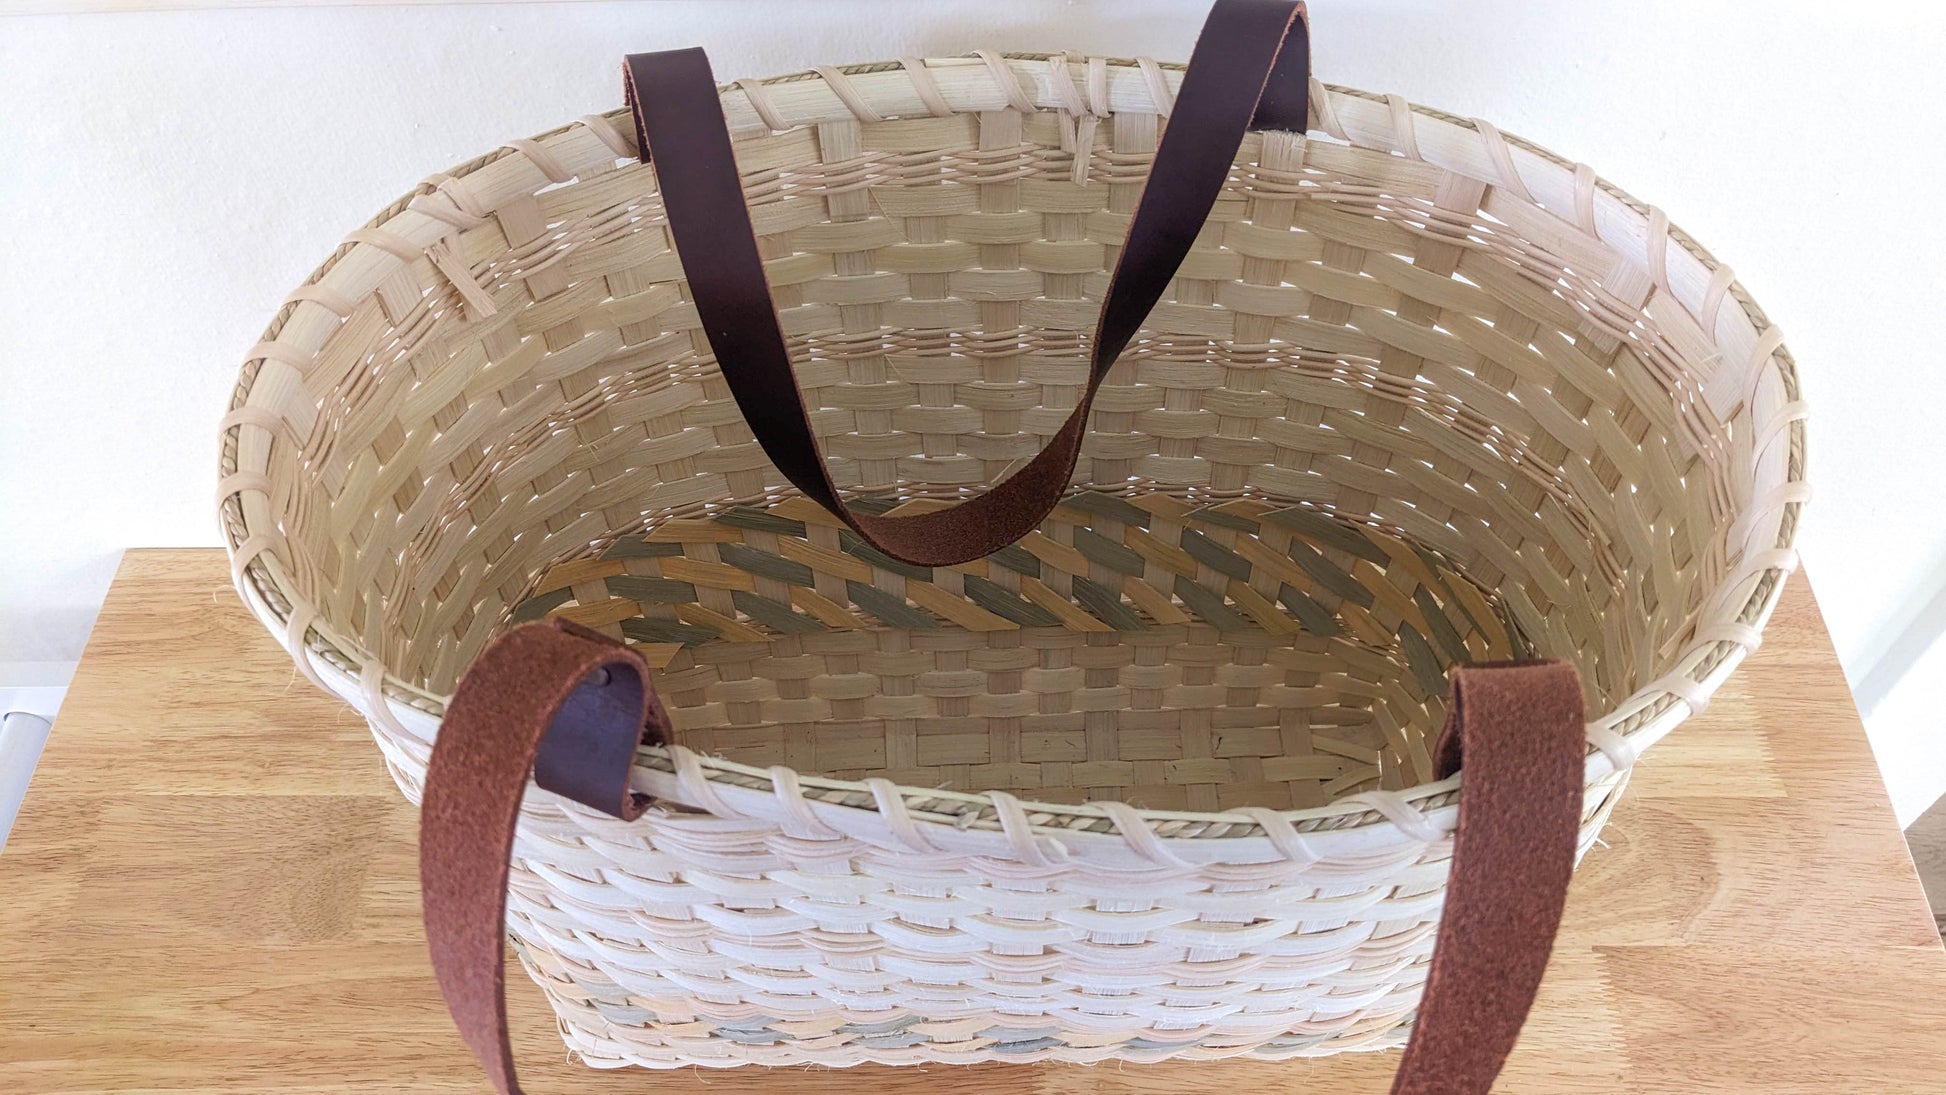 Randed Tote Basket Weaving Kit - Textile Indie 